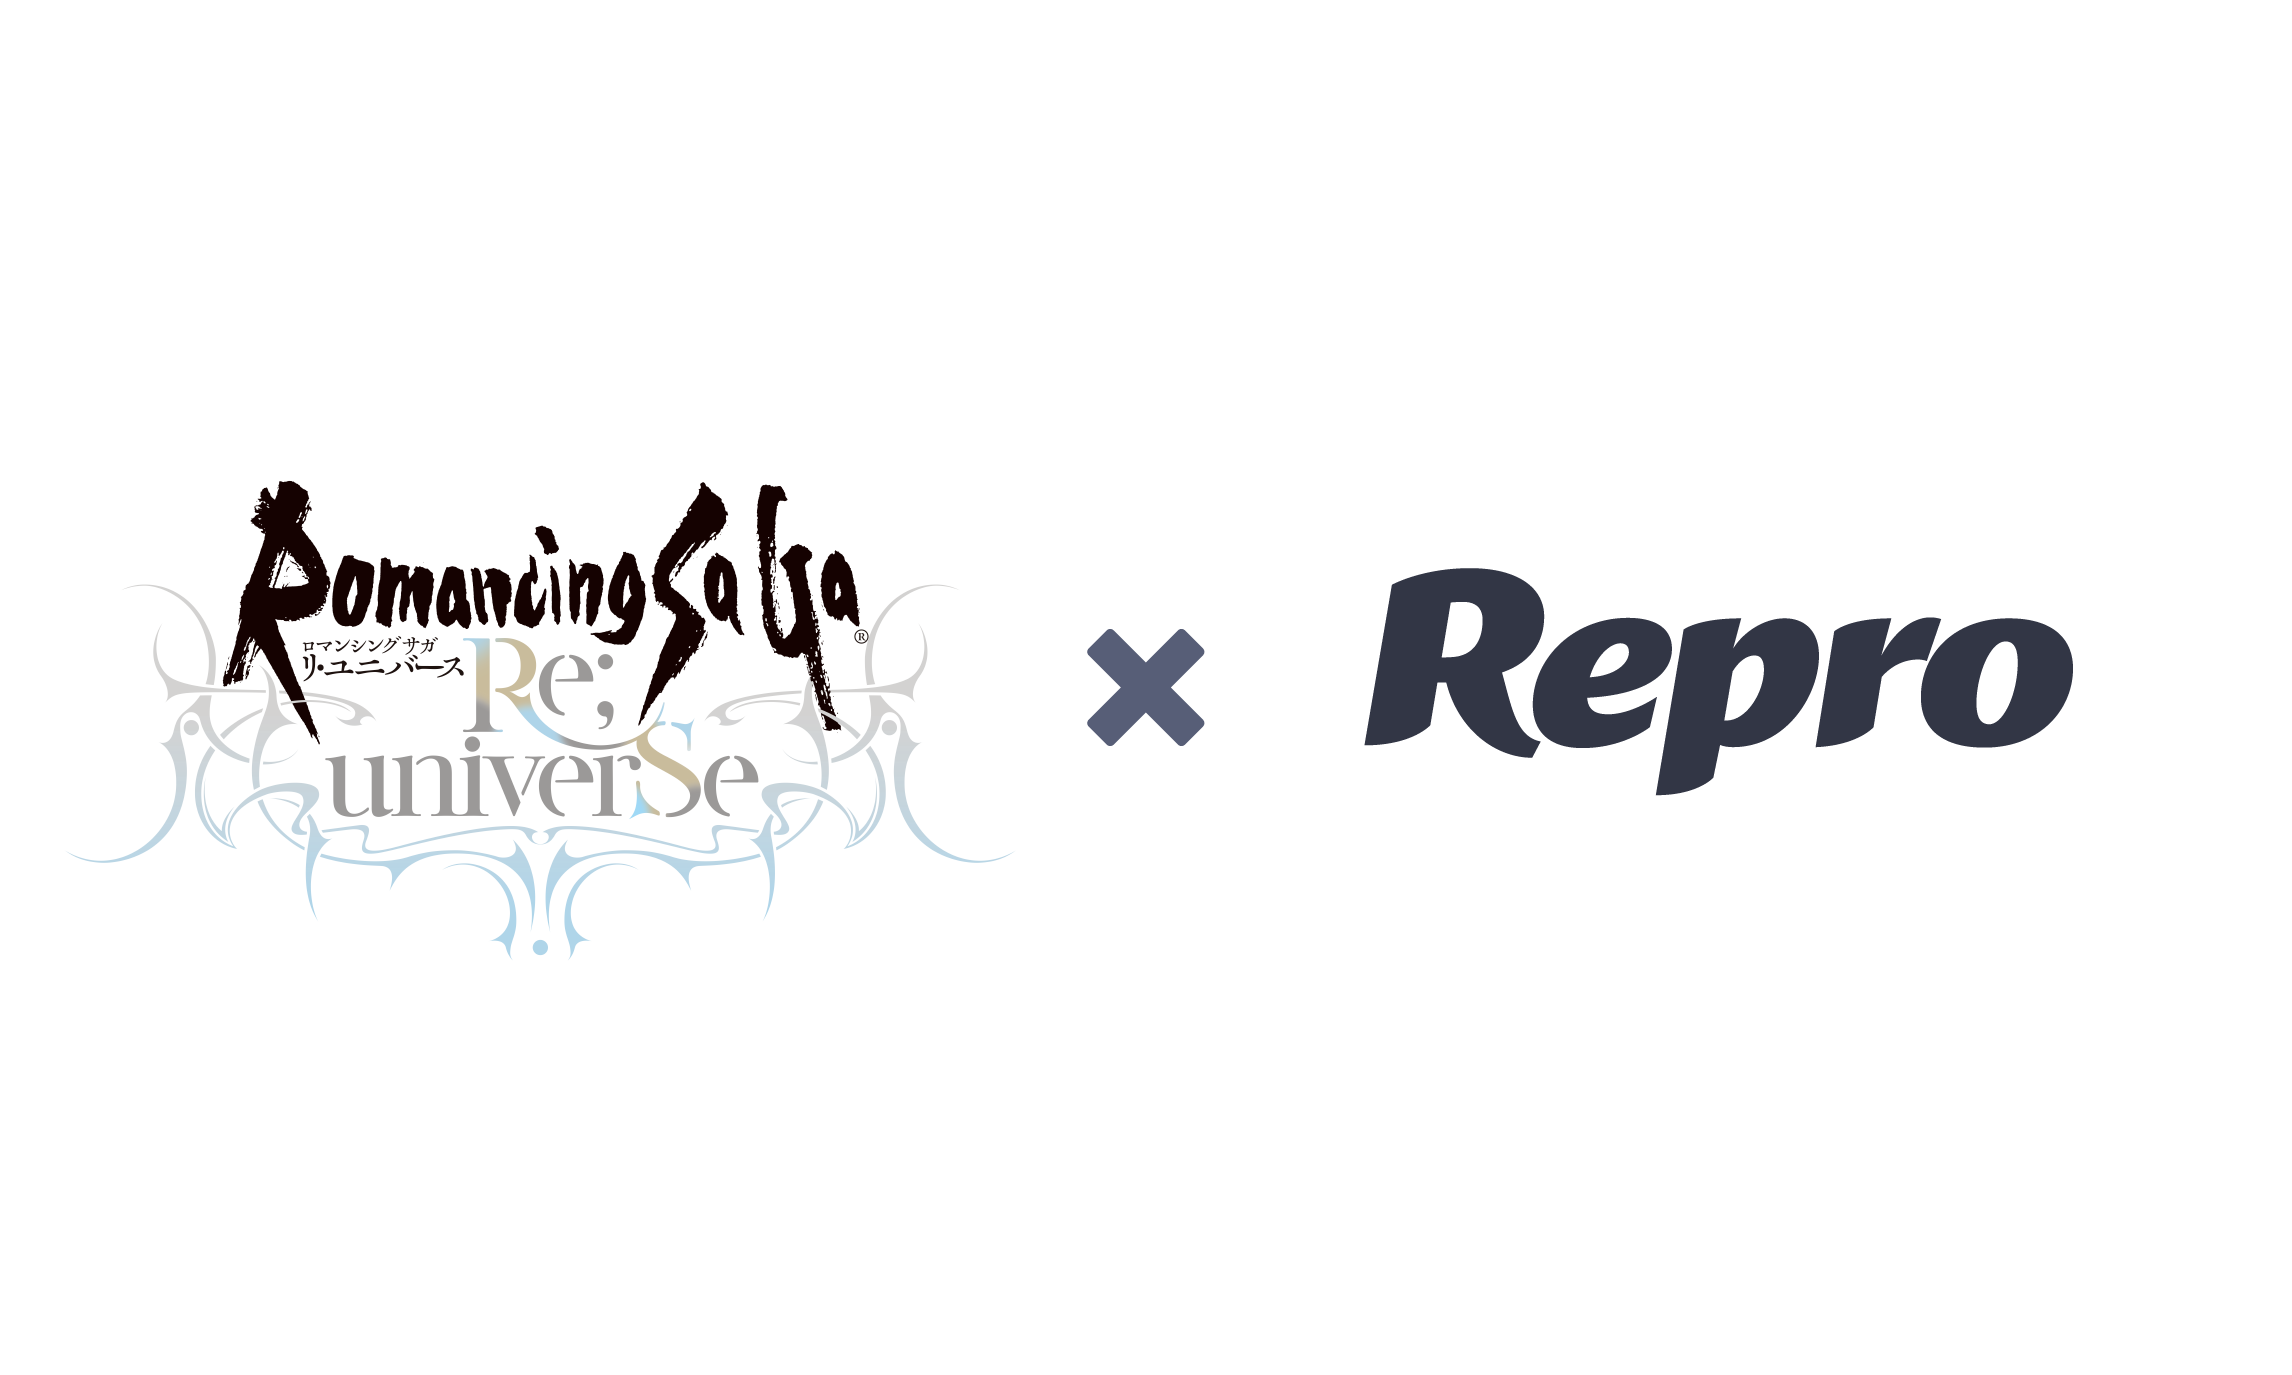 スクウェア エニックスとアカツキのスマートフォン向けゲームアプリ ロマンシング サガ リ ユニバース にrepro導入決定 Reproのプレスリリース